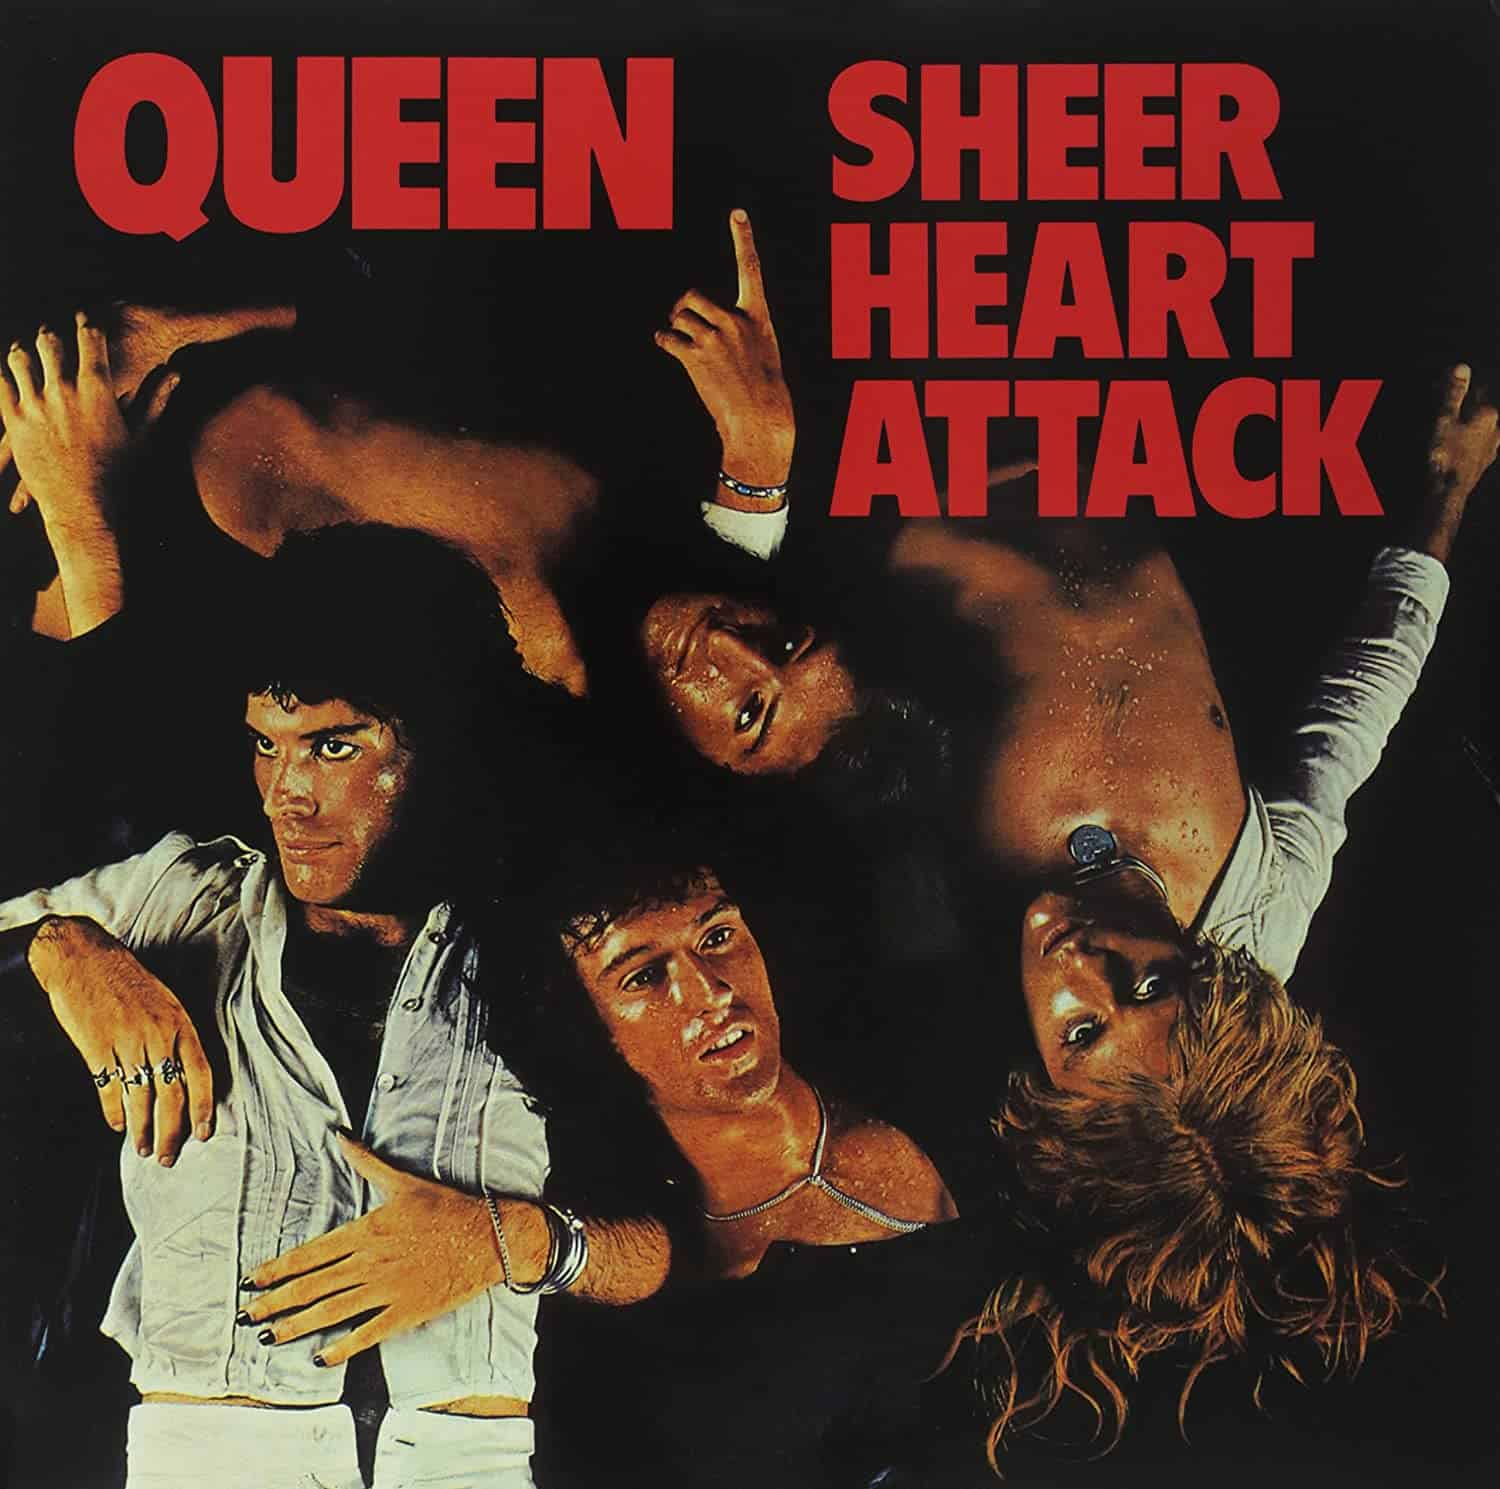 Queen-Sheer-heart-Attack-vinyl-LP-record-album-front